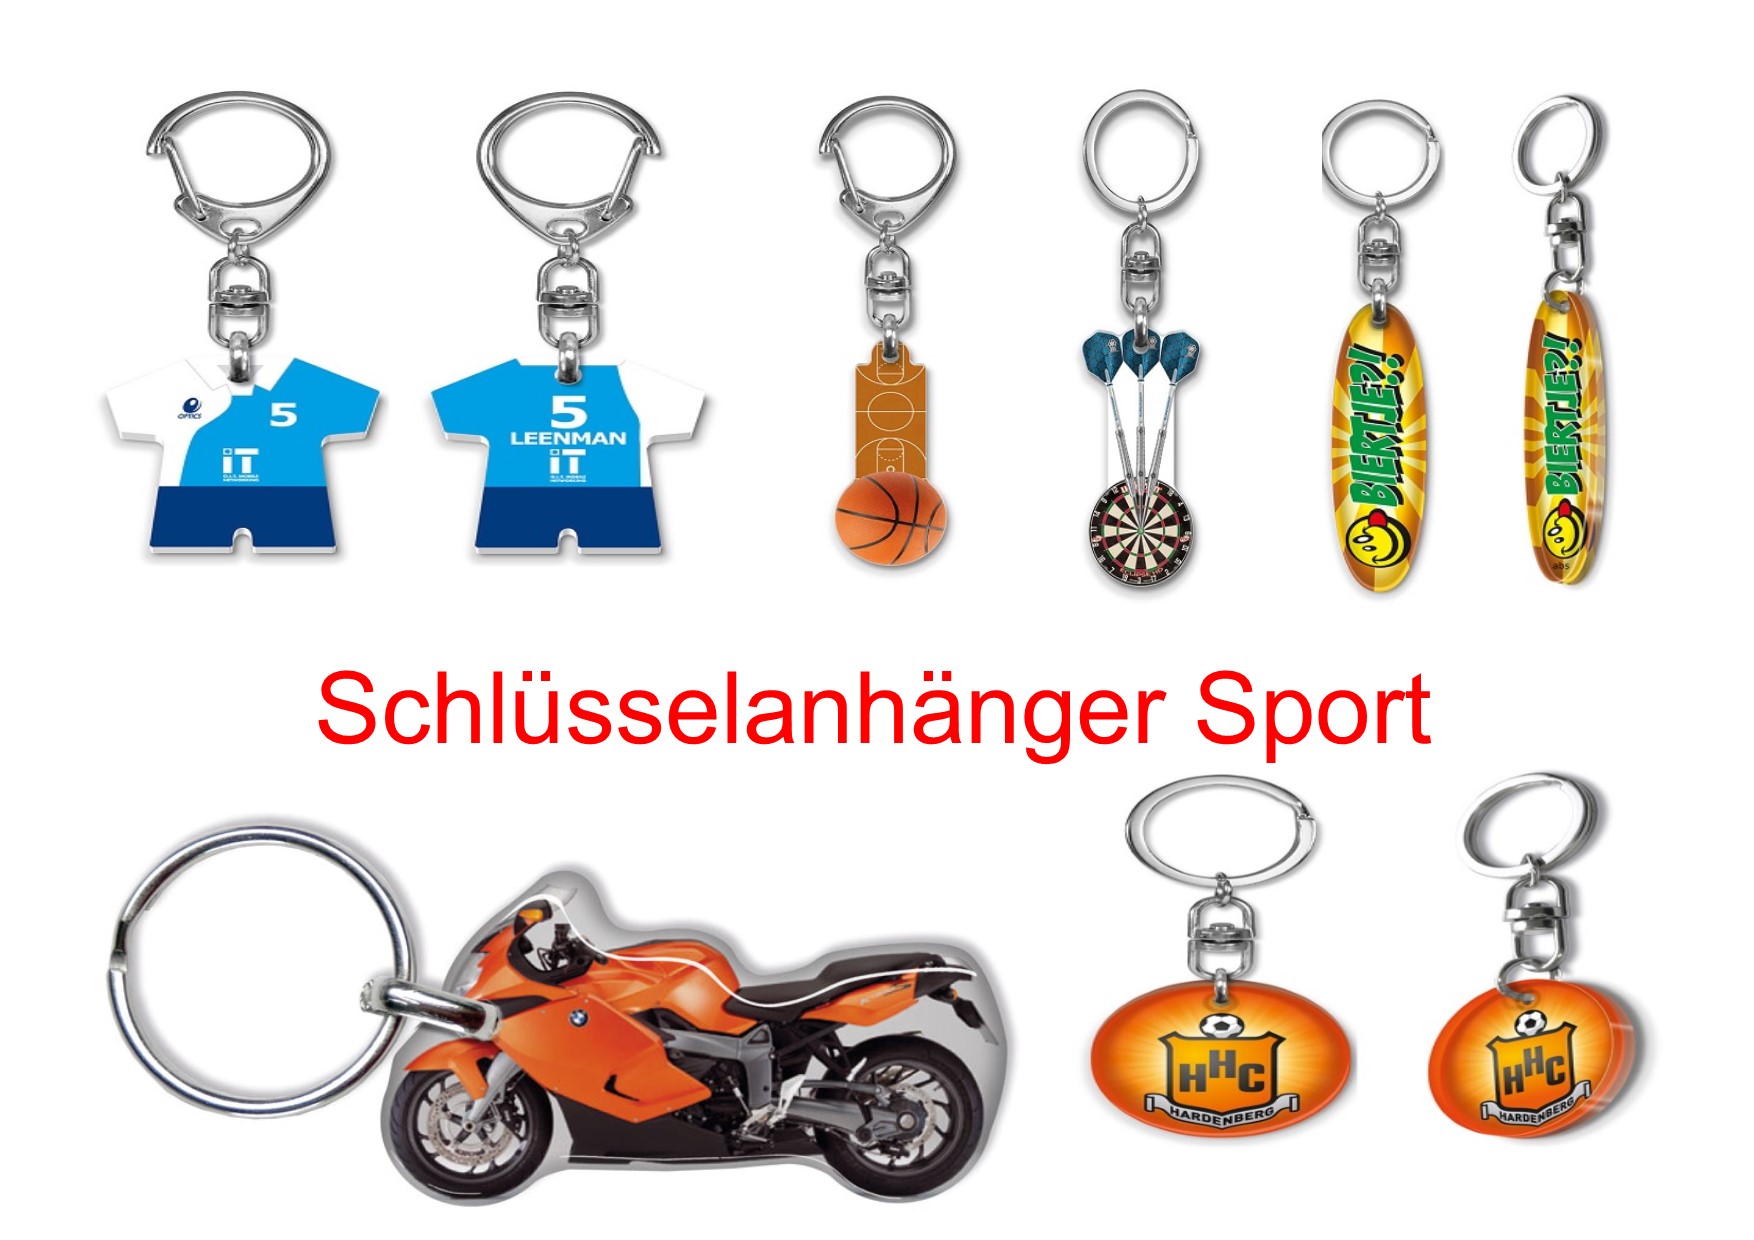 Schlüsselanhänger Plexi-glas, Schlüsselanhänger Sport, Schlüssel-Anhänger Sport, Schlüsselanhänger Fußball, Schlüsselanhänger,